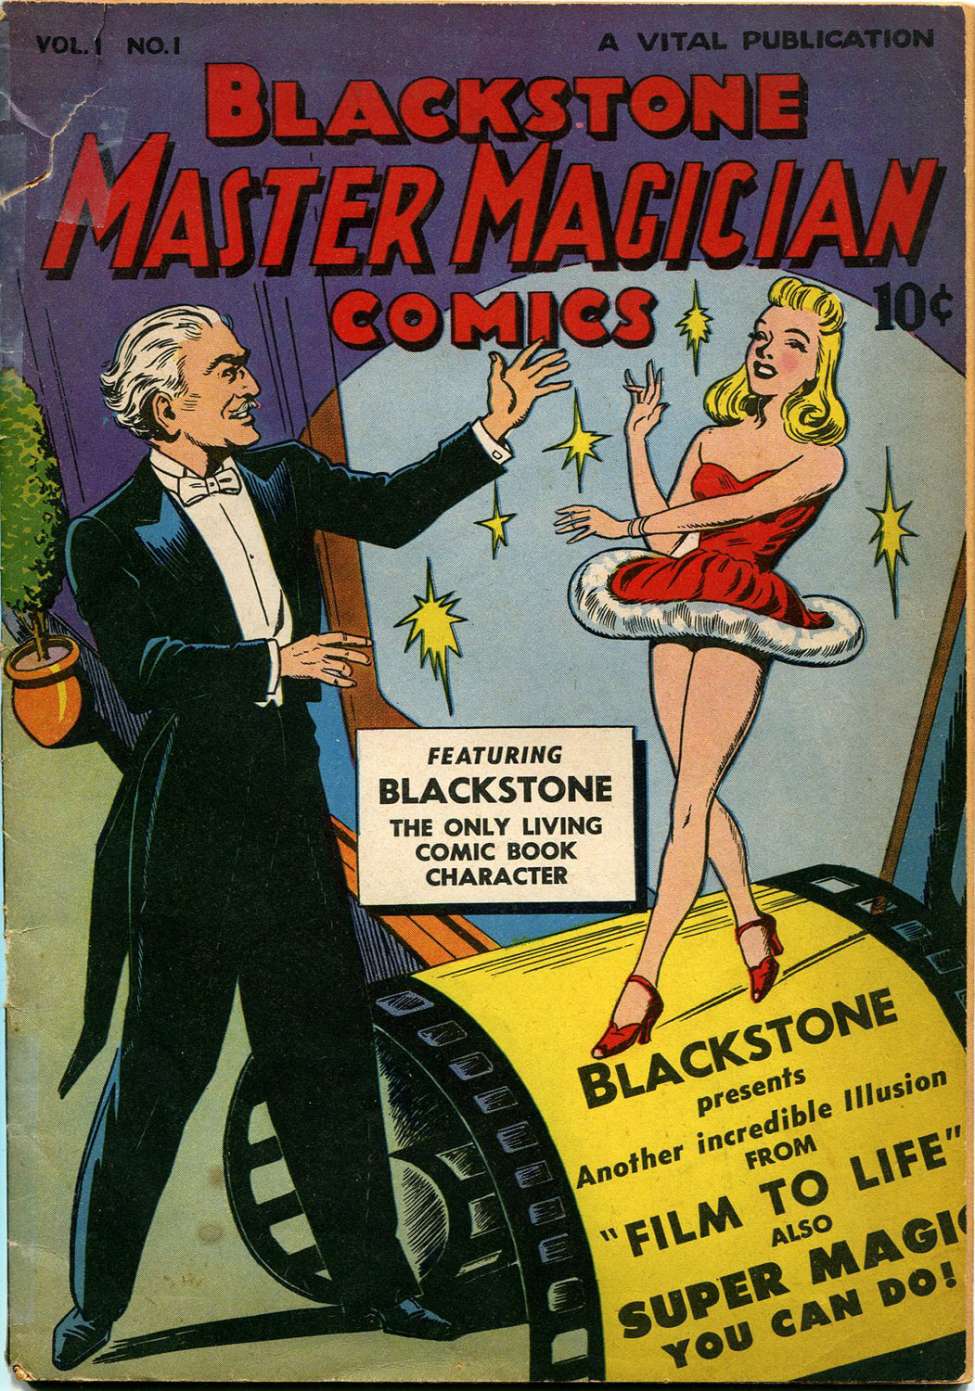 Blackstone Master Magician Comics #1, by Vital Publications